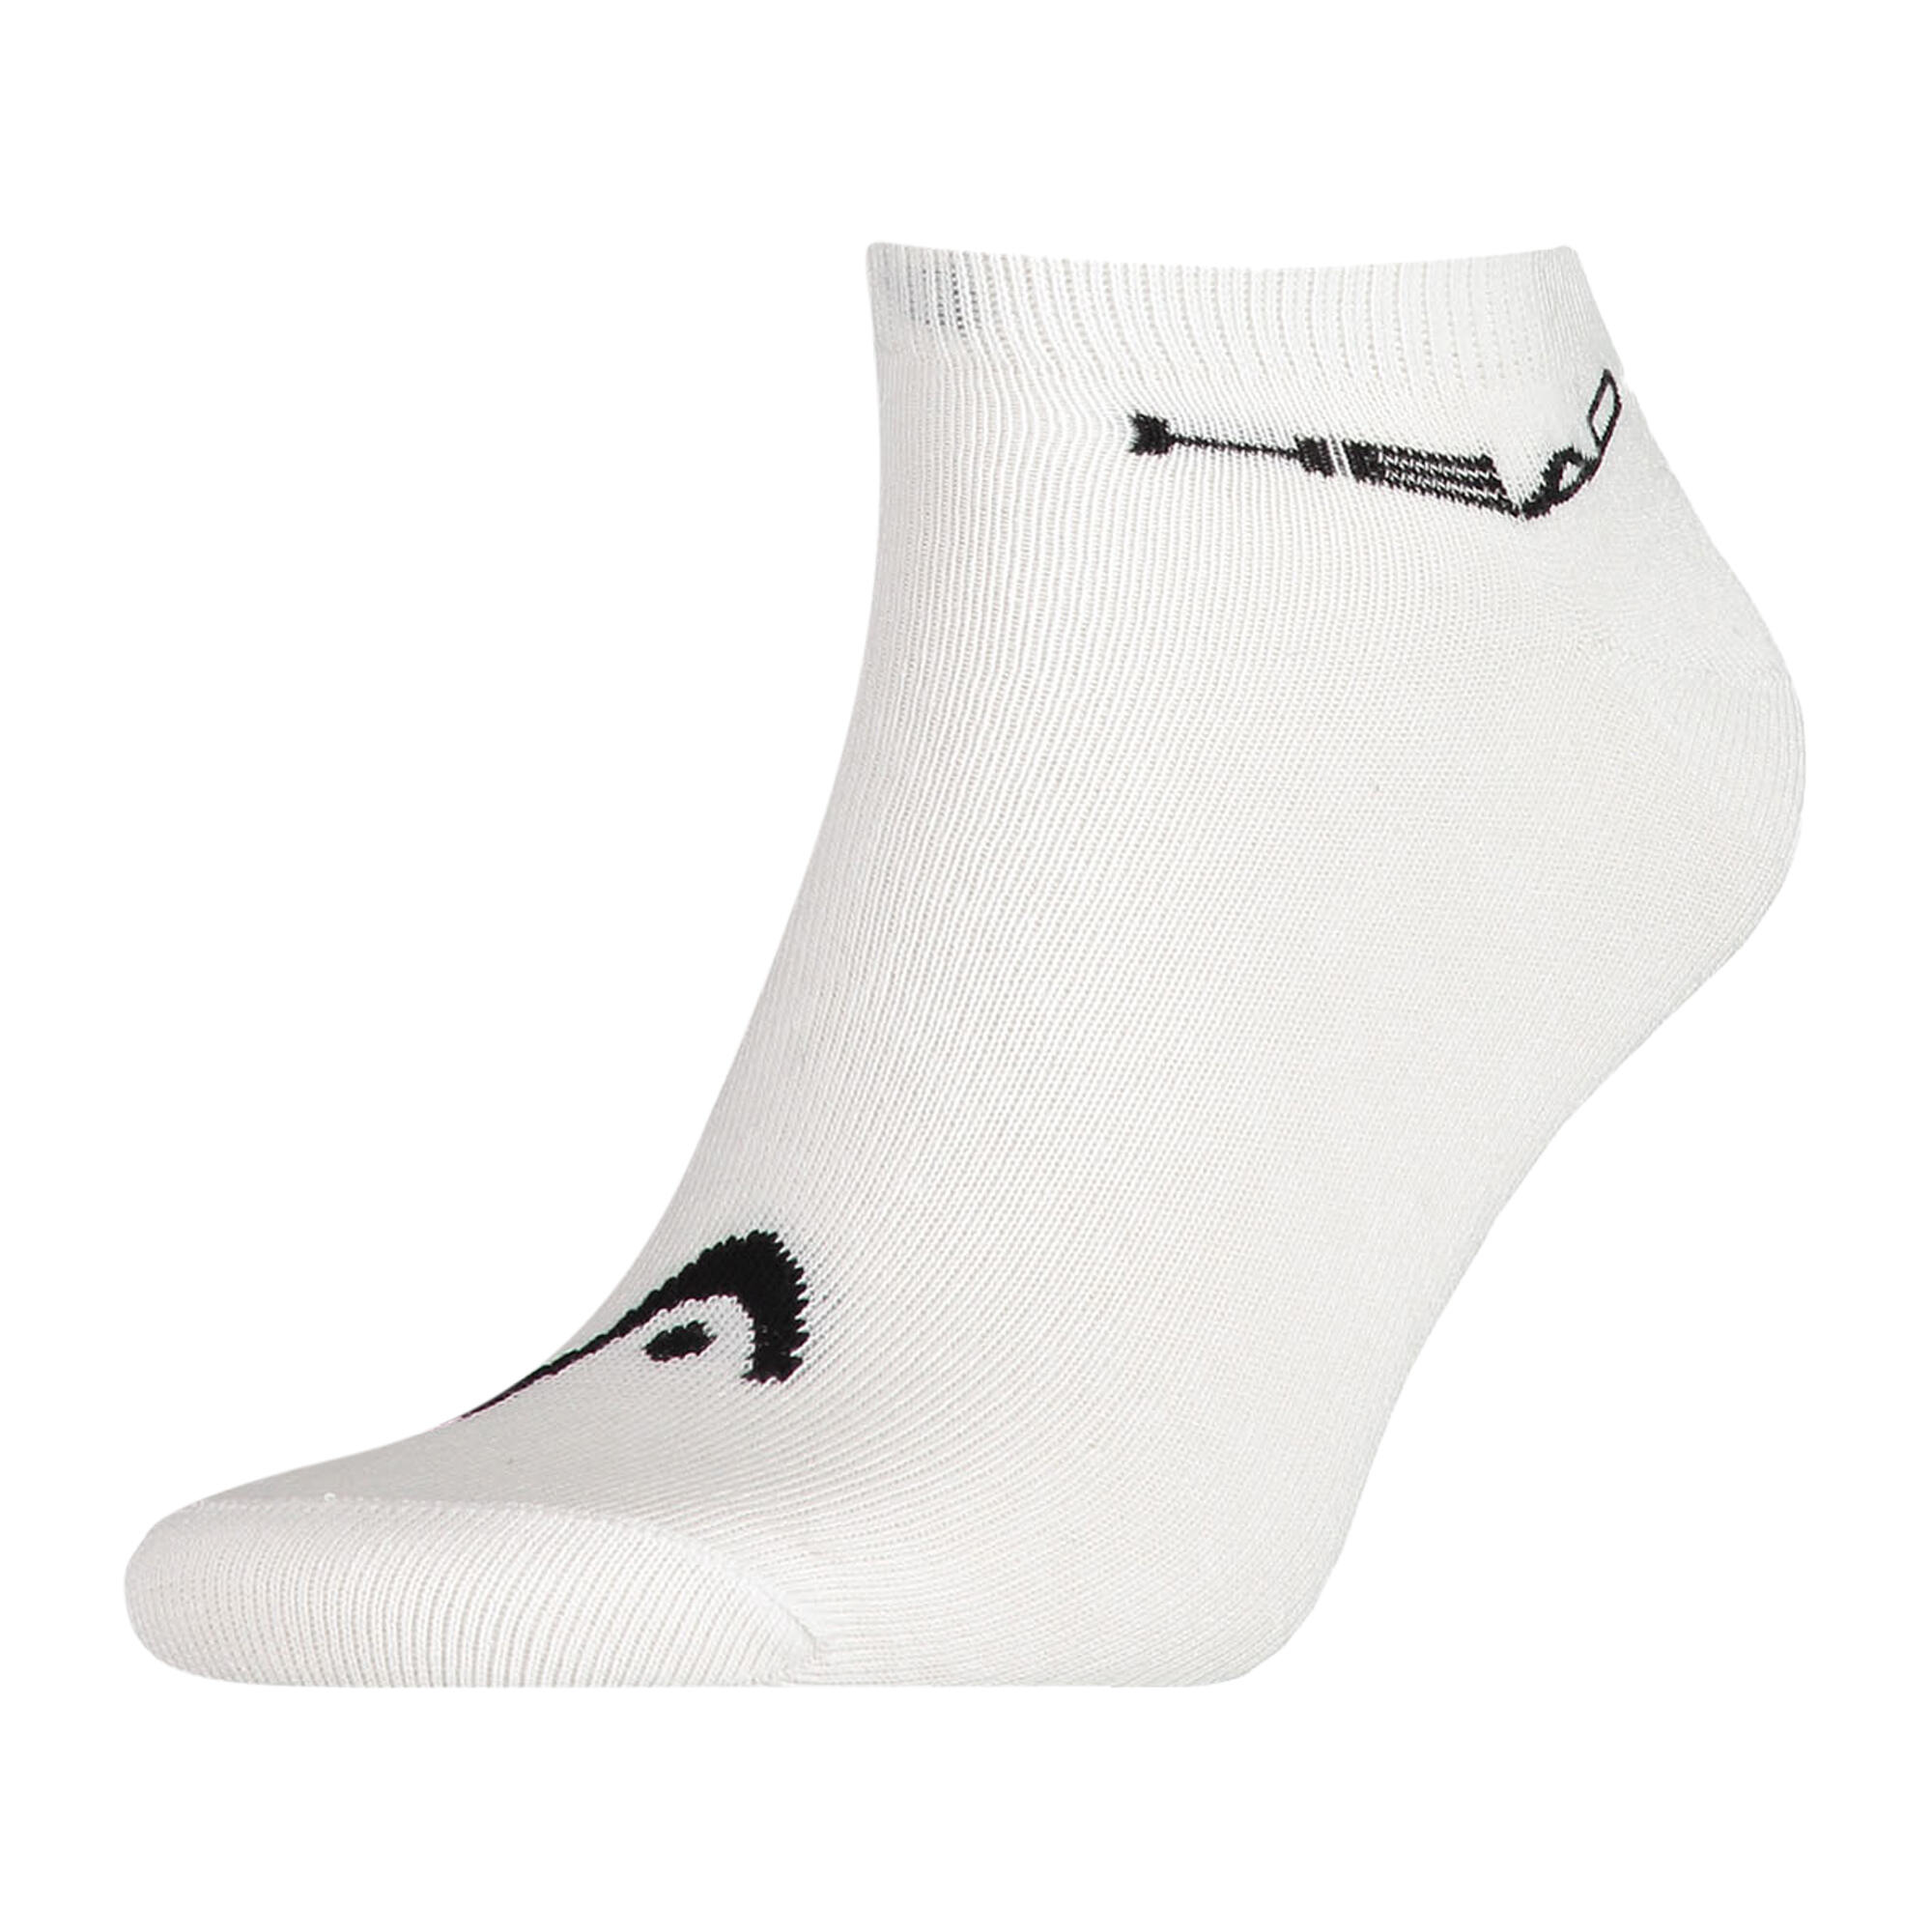 Mens Socks (Pack of 3) (White/Black) 1/3